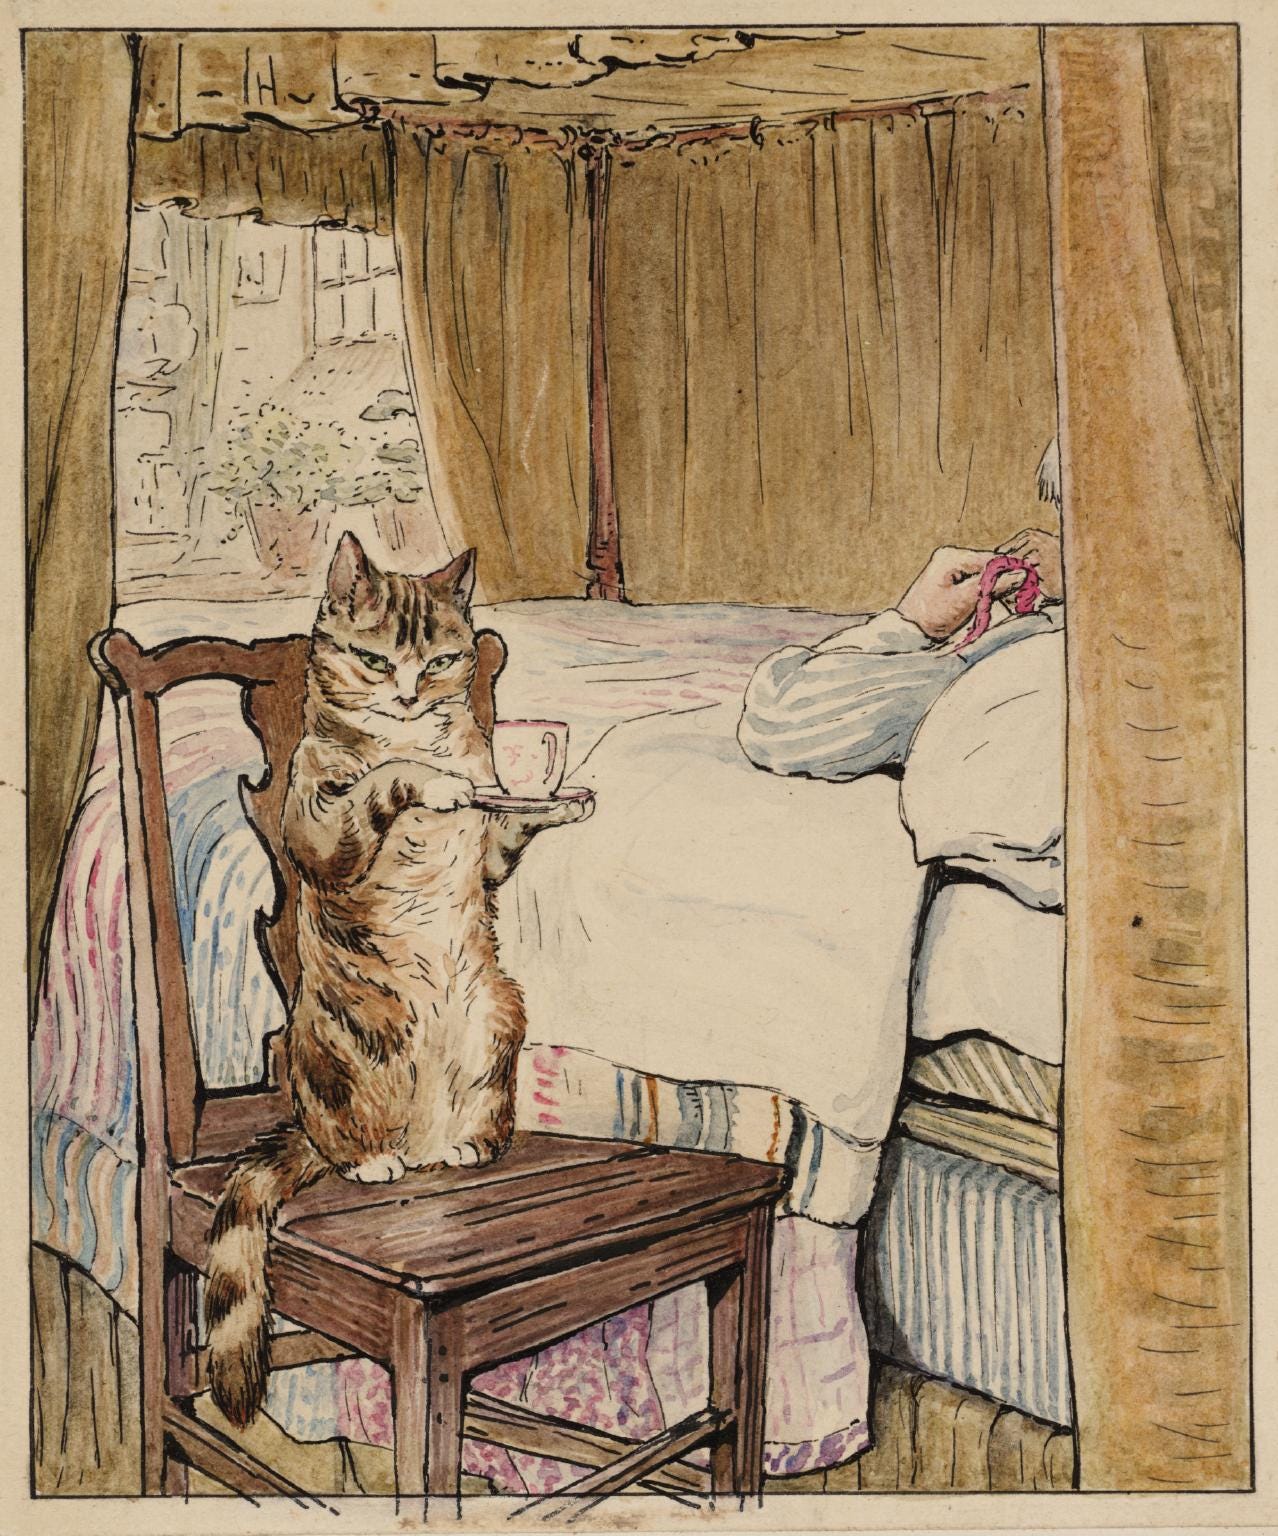 Helen Beatrix Potter, ‘Simpkin at the Tailor’s Bedside’ c.1902